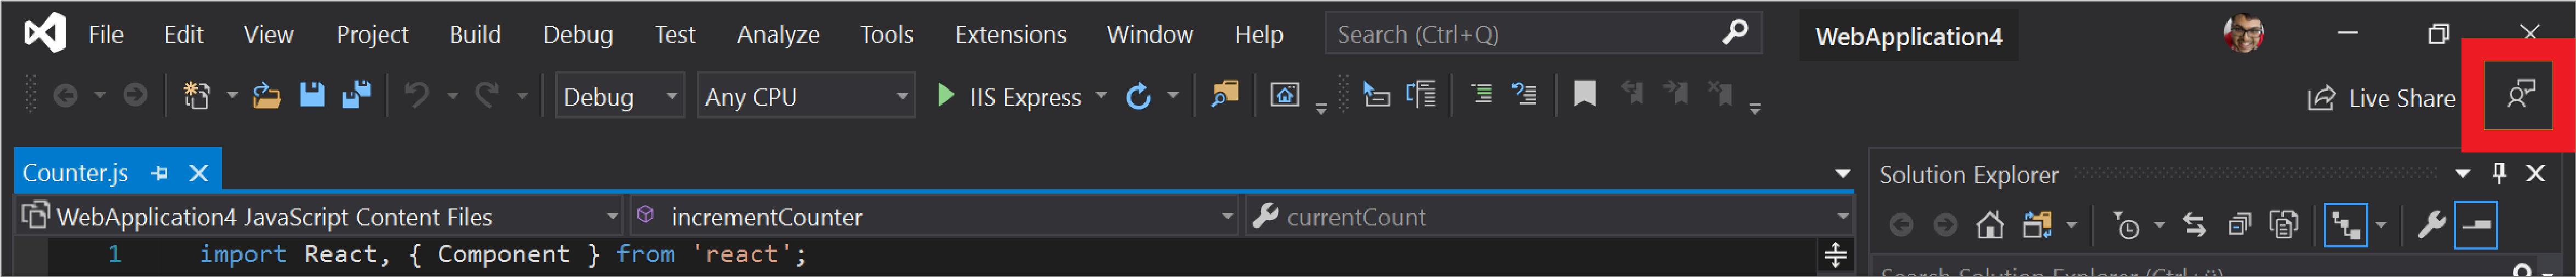 The Send Feedback icon in Visual Studio